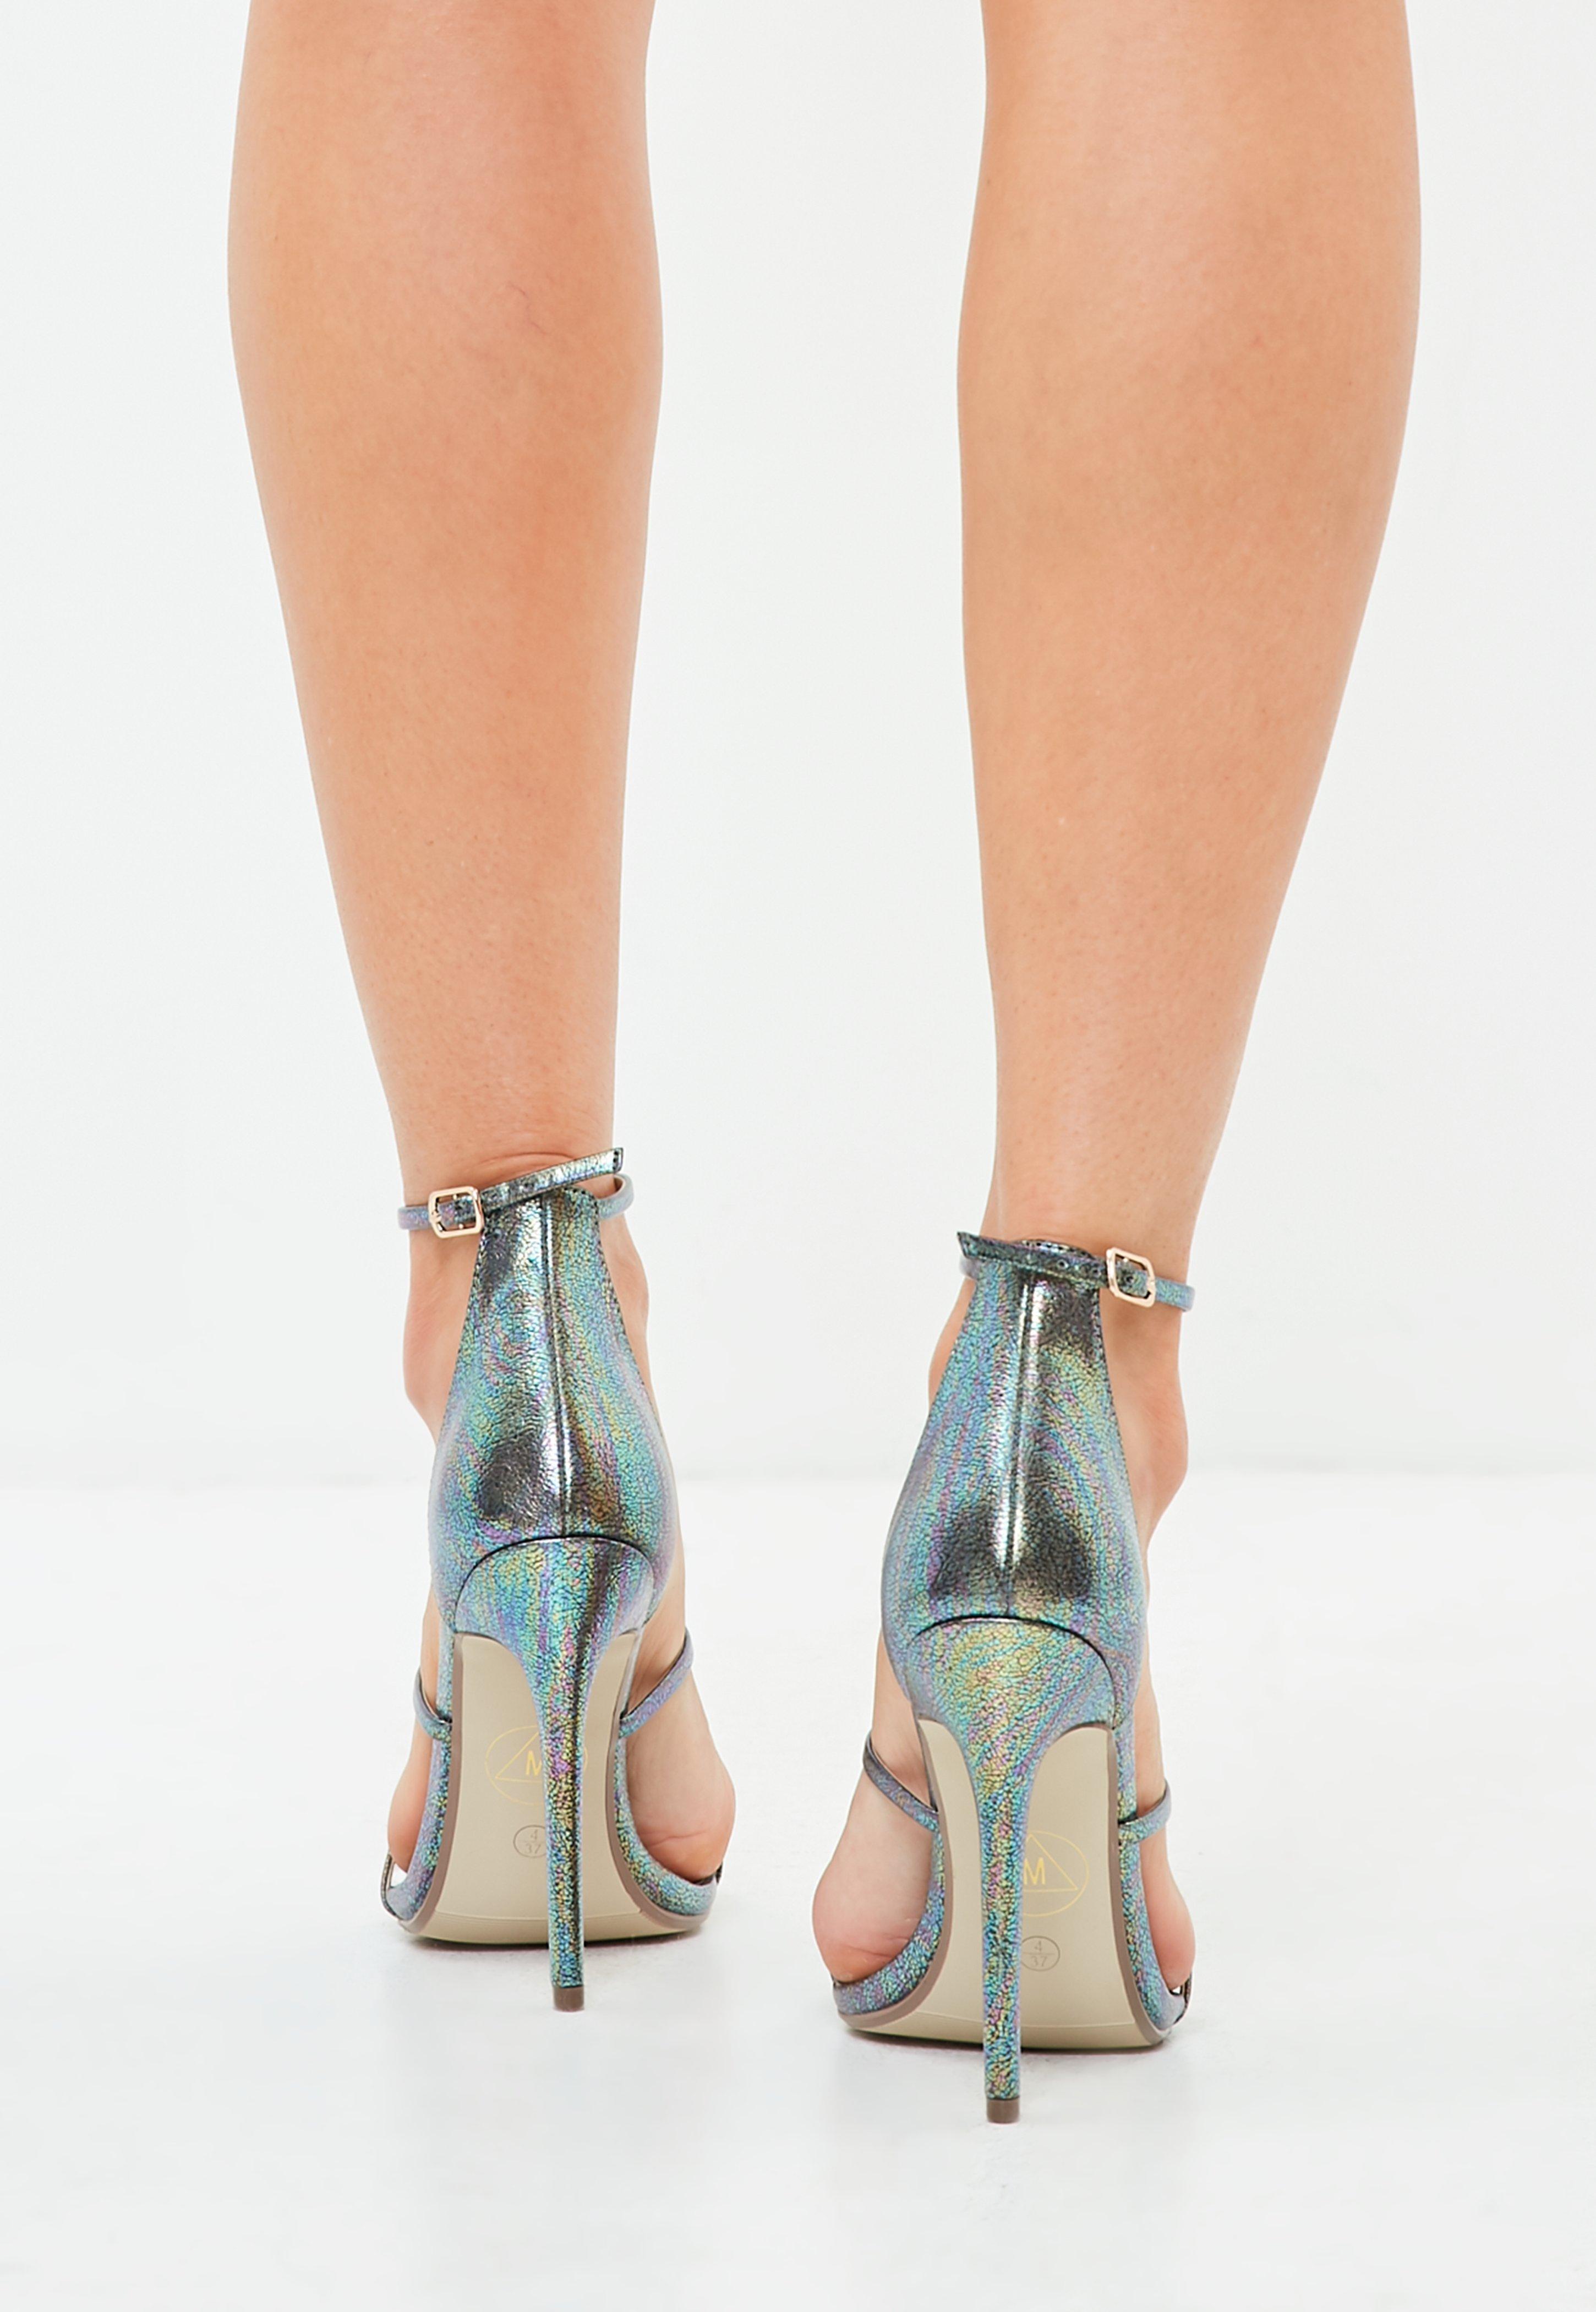 metallic green heels